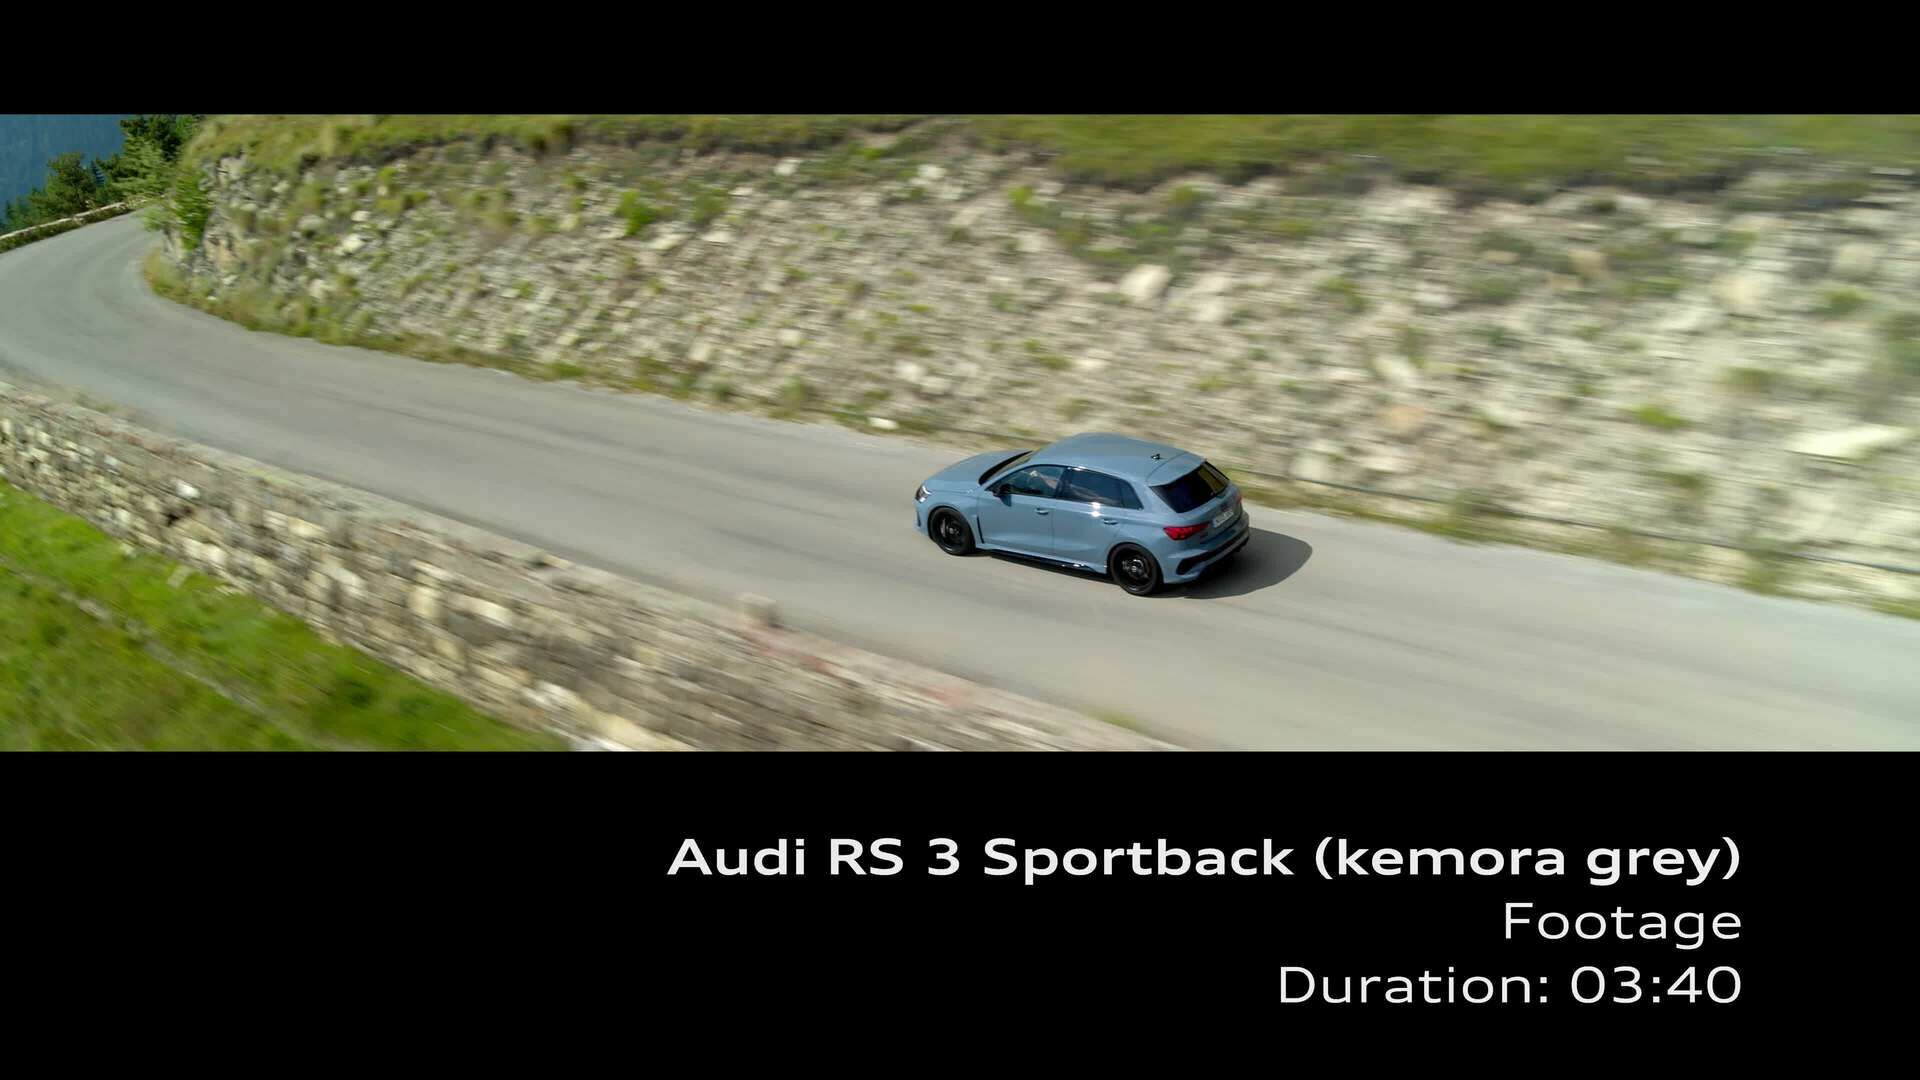 Footage: Audi RS 3 Limousine Kemoragrau